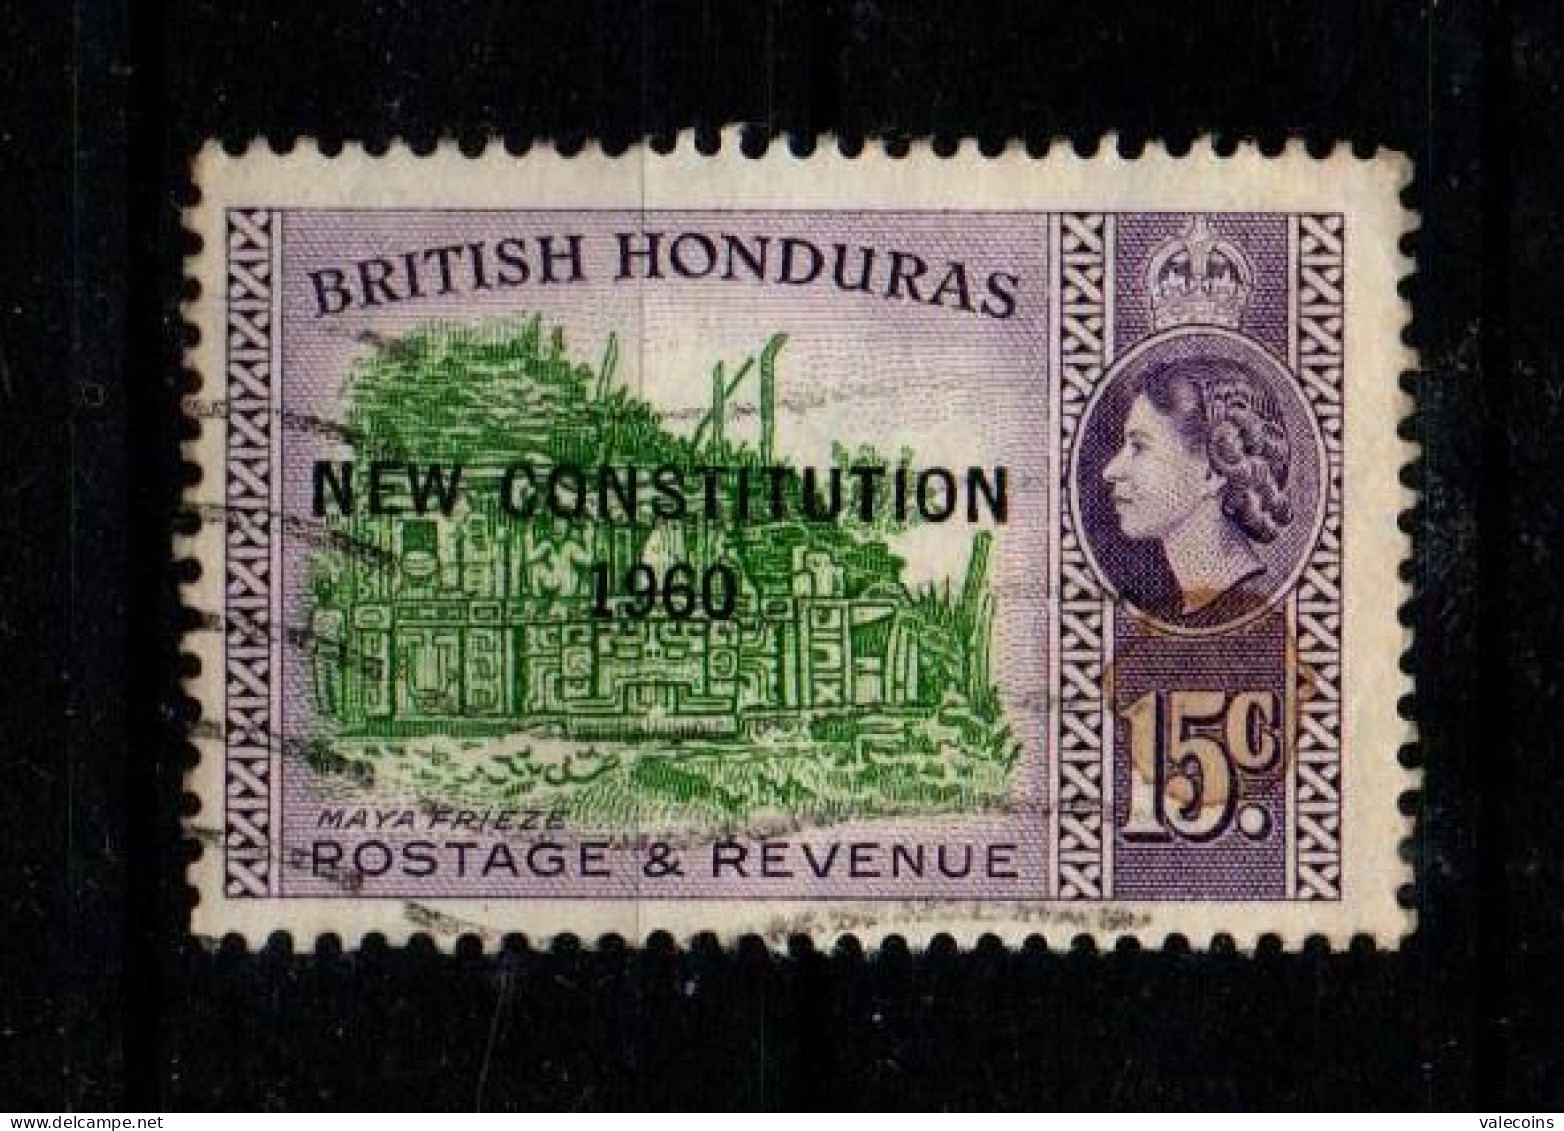 BRITISH HONDURAS (BELIZE) - 1961 - 15 Cent - New Constitution 1960 - Queen Elizabewth II - Used Stamp         MyRef:L - Honduras Britannico (...-1970)